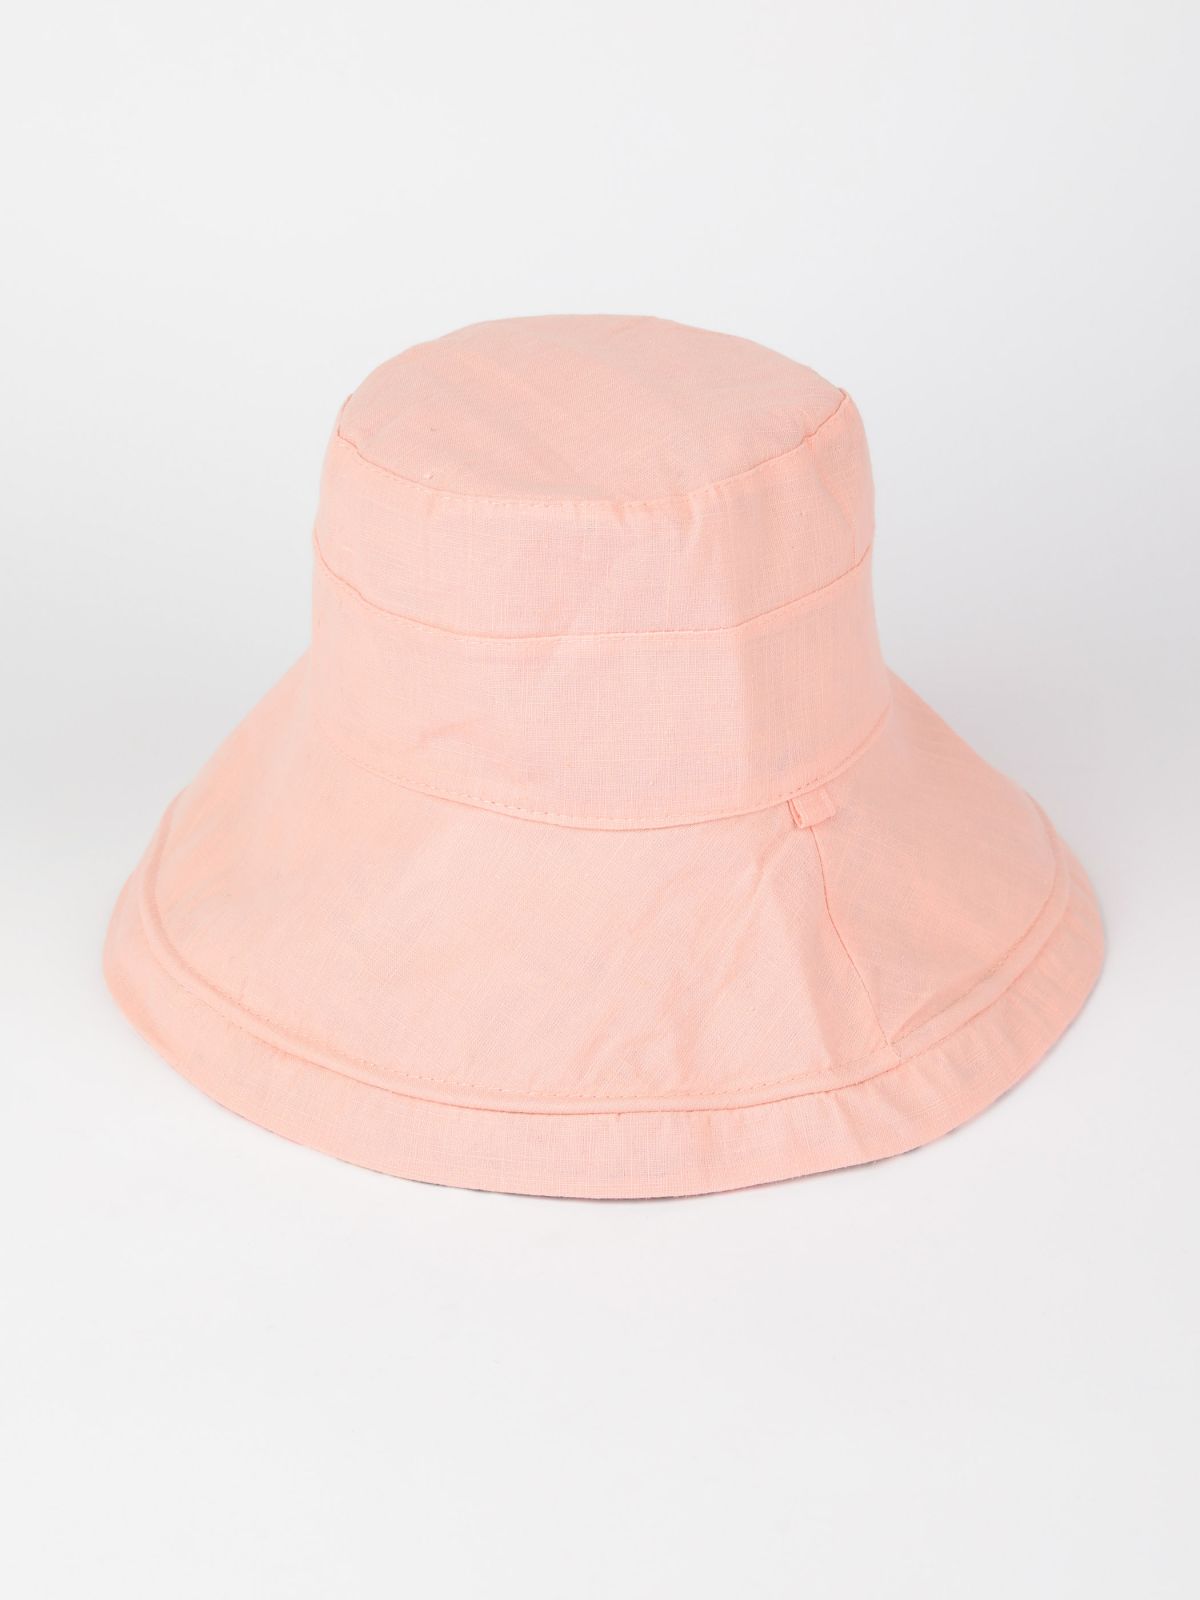  כובע באקט פנמה דו צדדי / נשים של YANGA